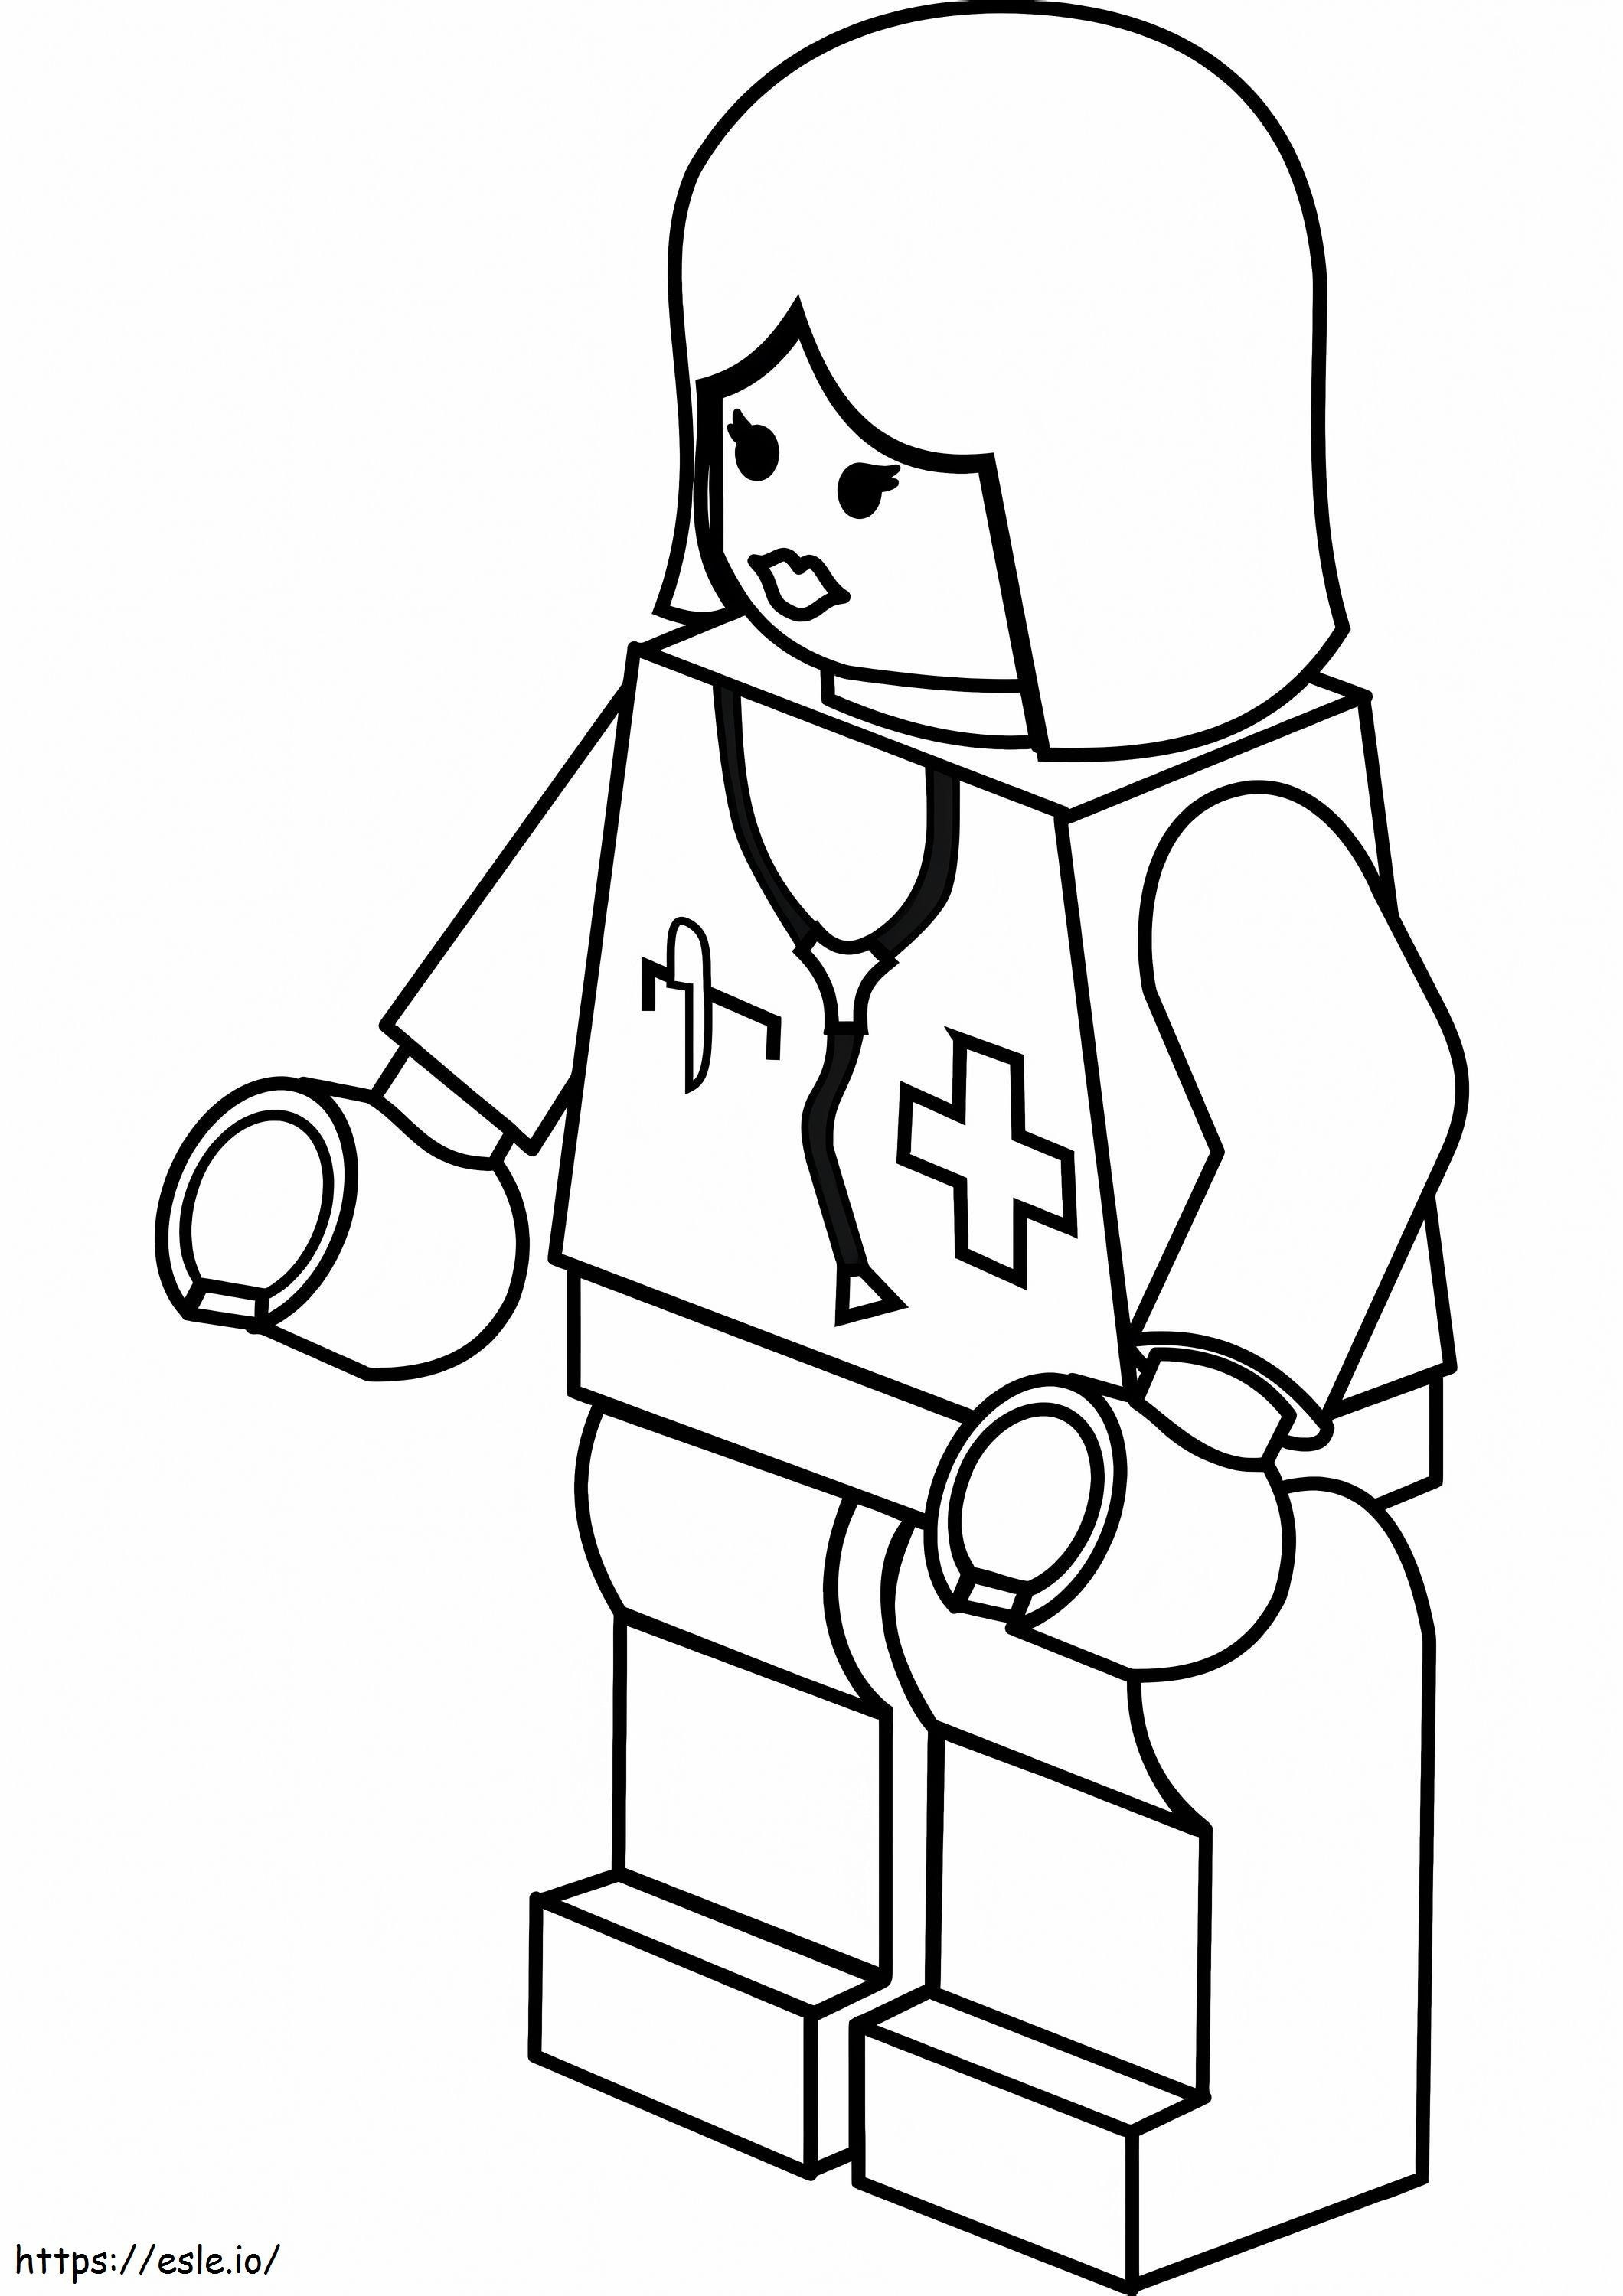 Lego Nurse coloring page